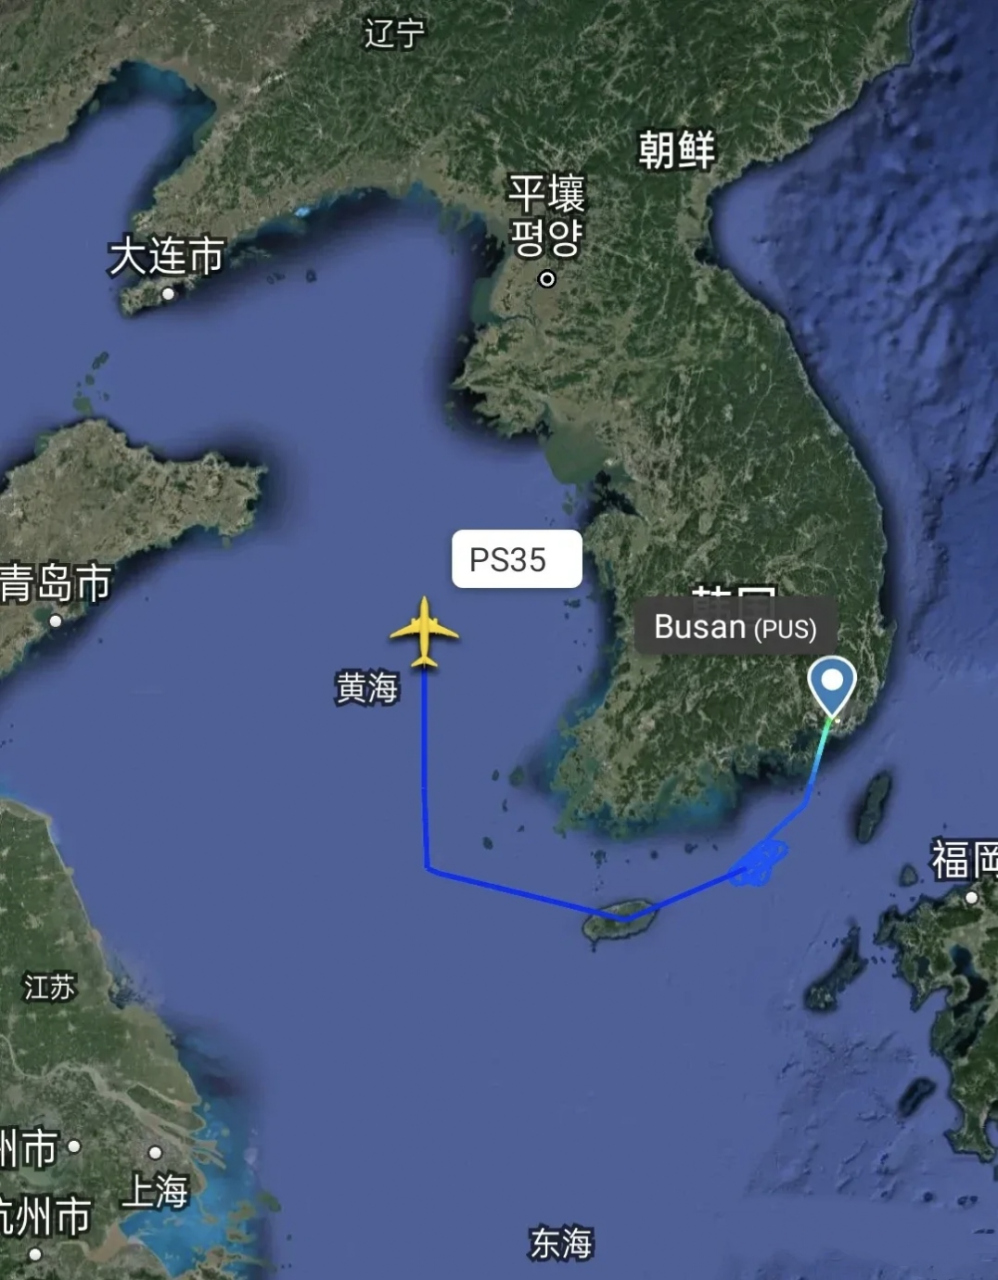 4月20日(今天)10点56分,在黄海中部海域上空,发现一架隐匿信息的飞机